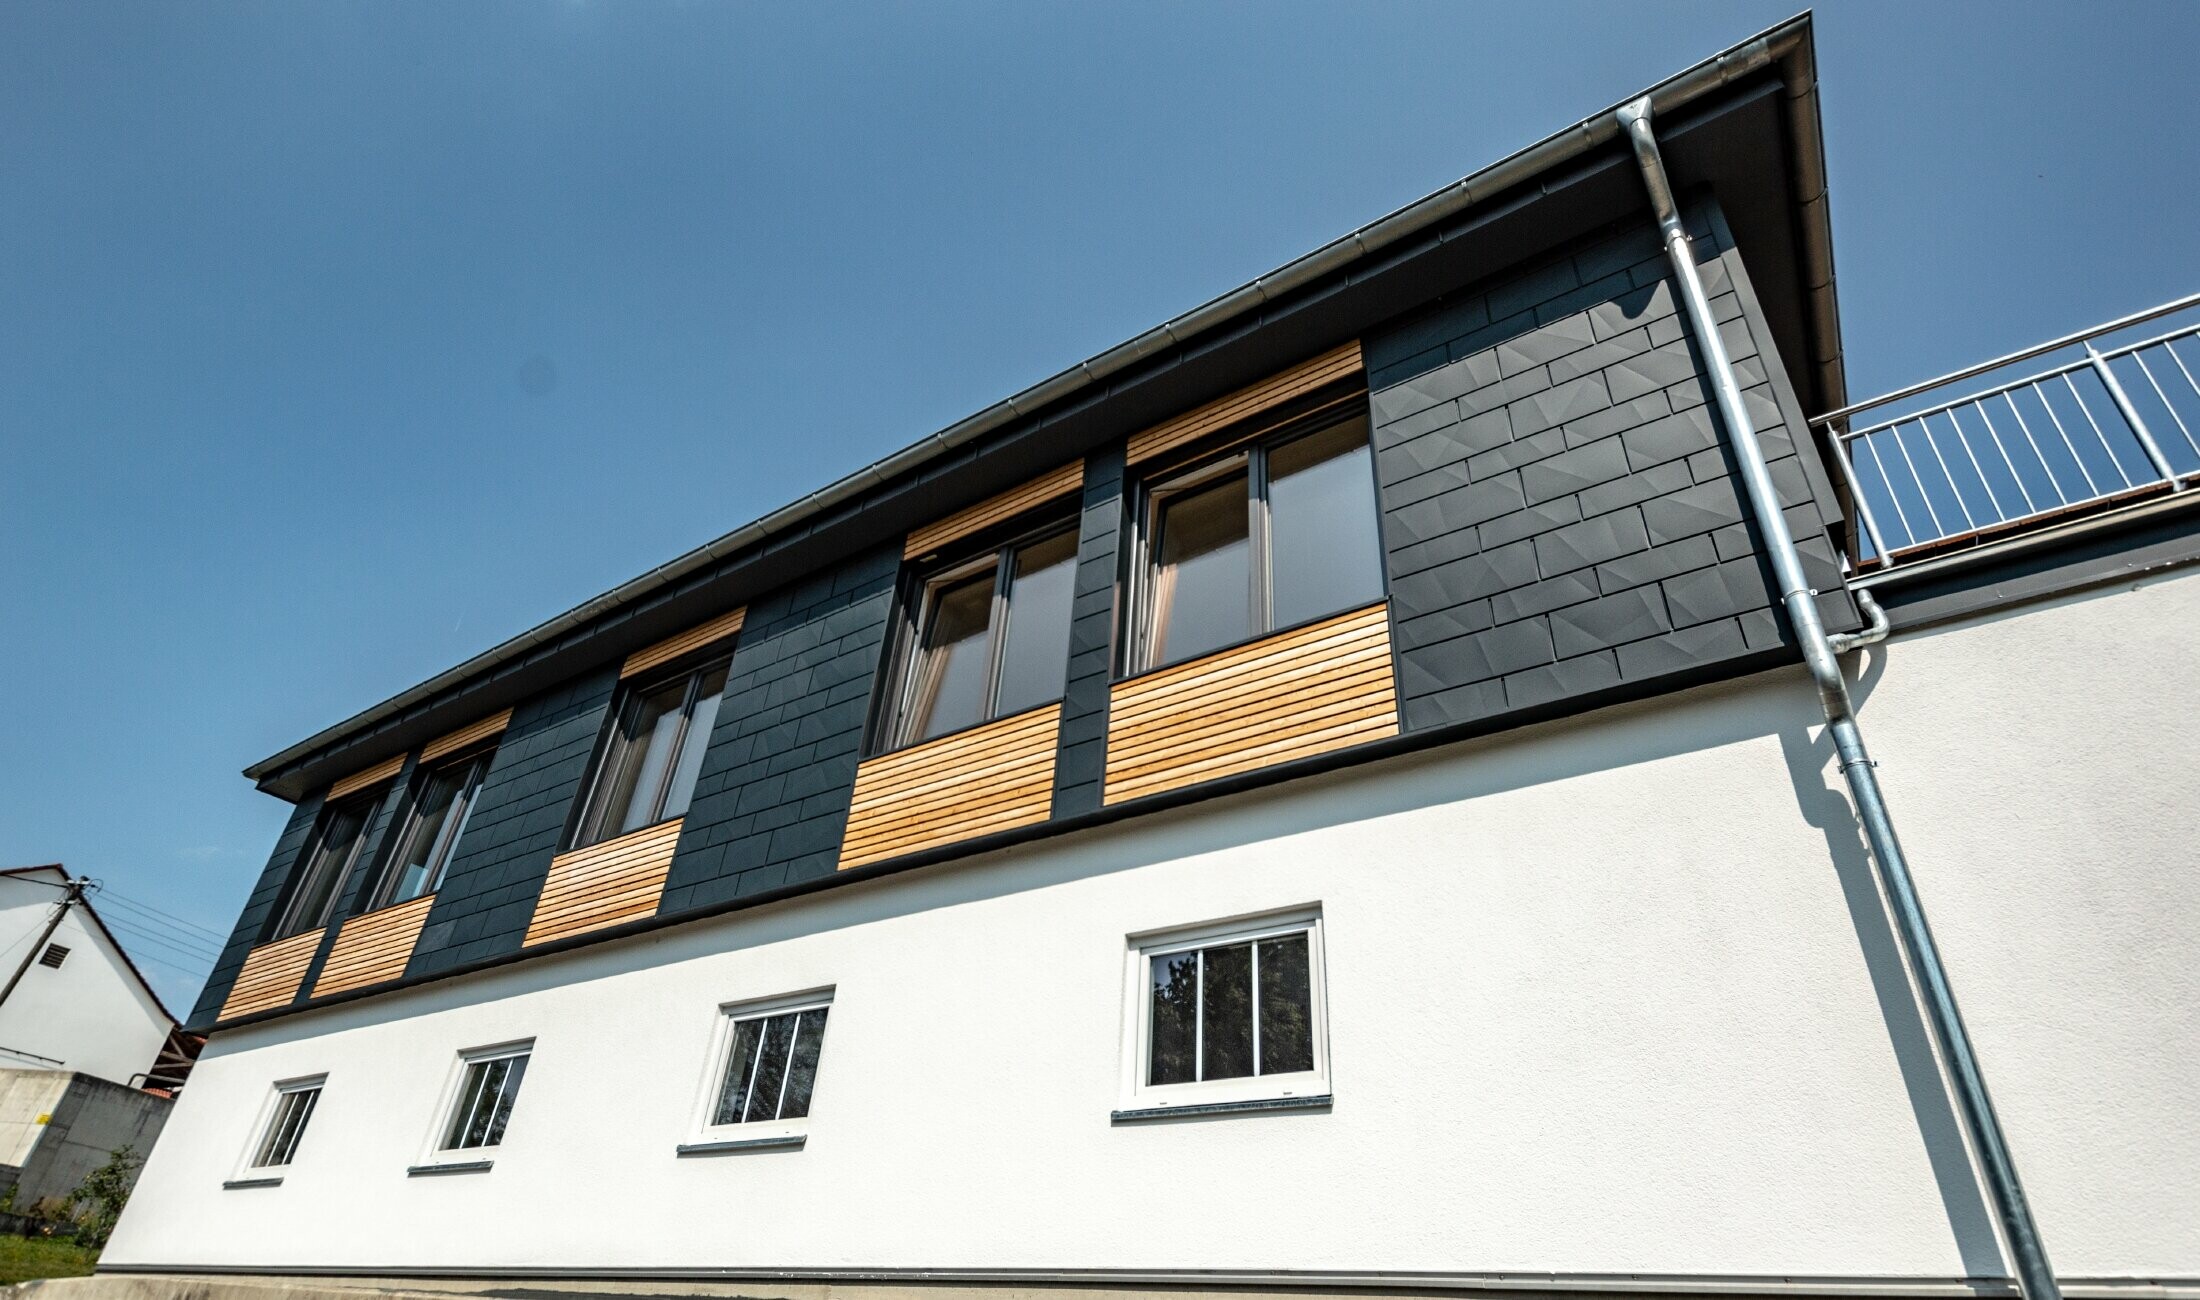 Facadedesign udført i forskellige byggematerialer: der er anvendt PREFA Siding.X i aluminium i antracit, en vandret træfacade og en hvid pudset facade.